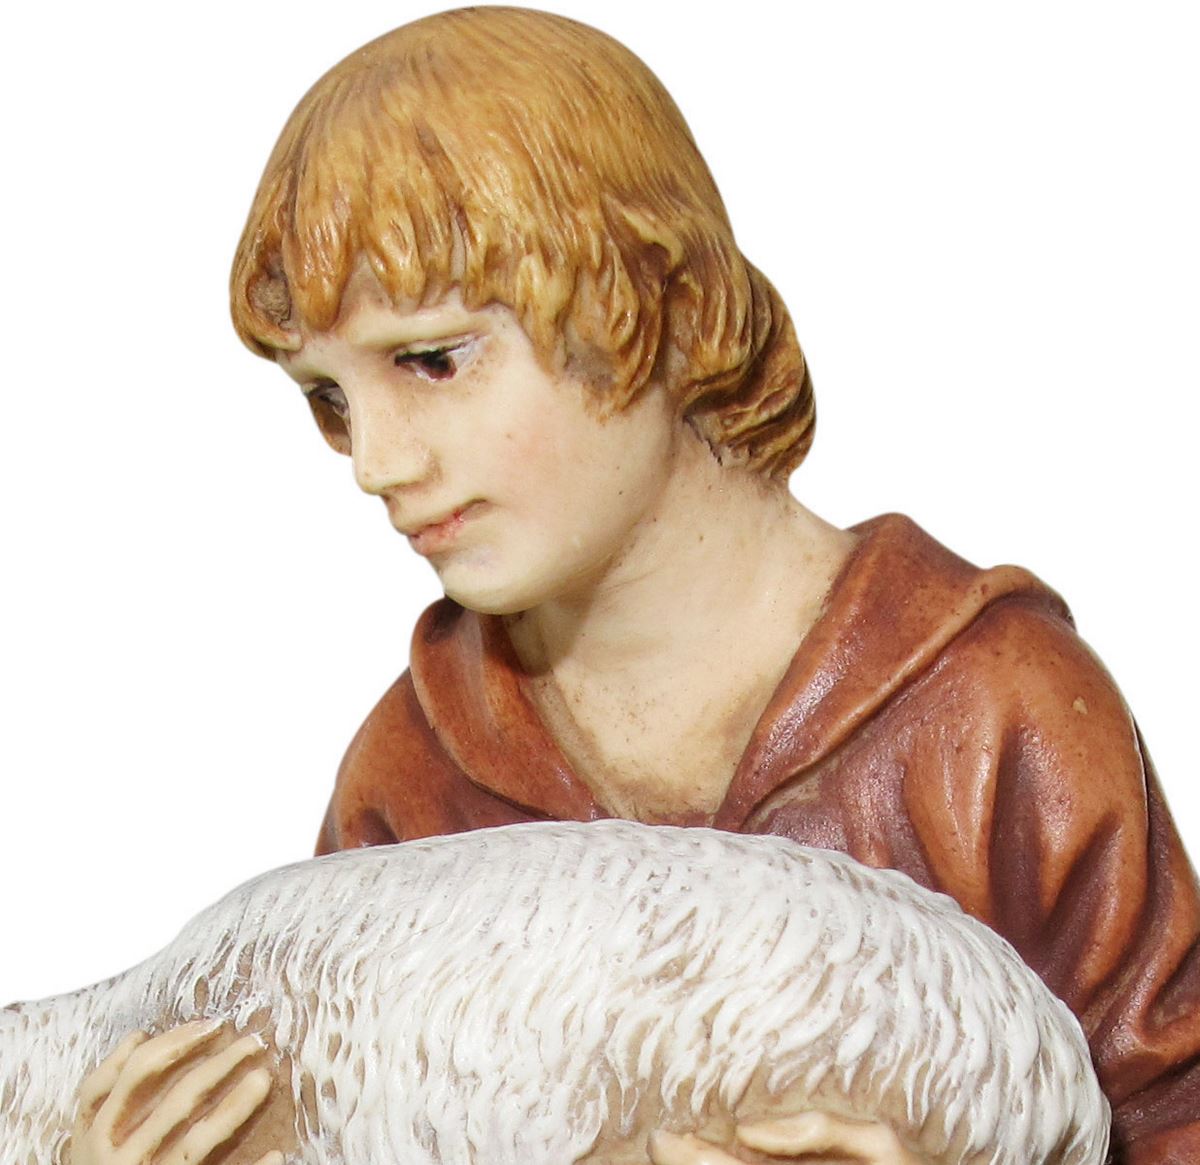 statue presepe: pastore in ginocchio con agnello linea martino landi per presepio da cm 50